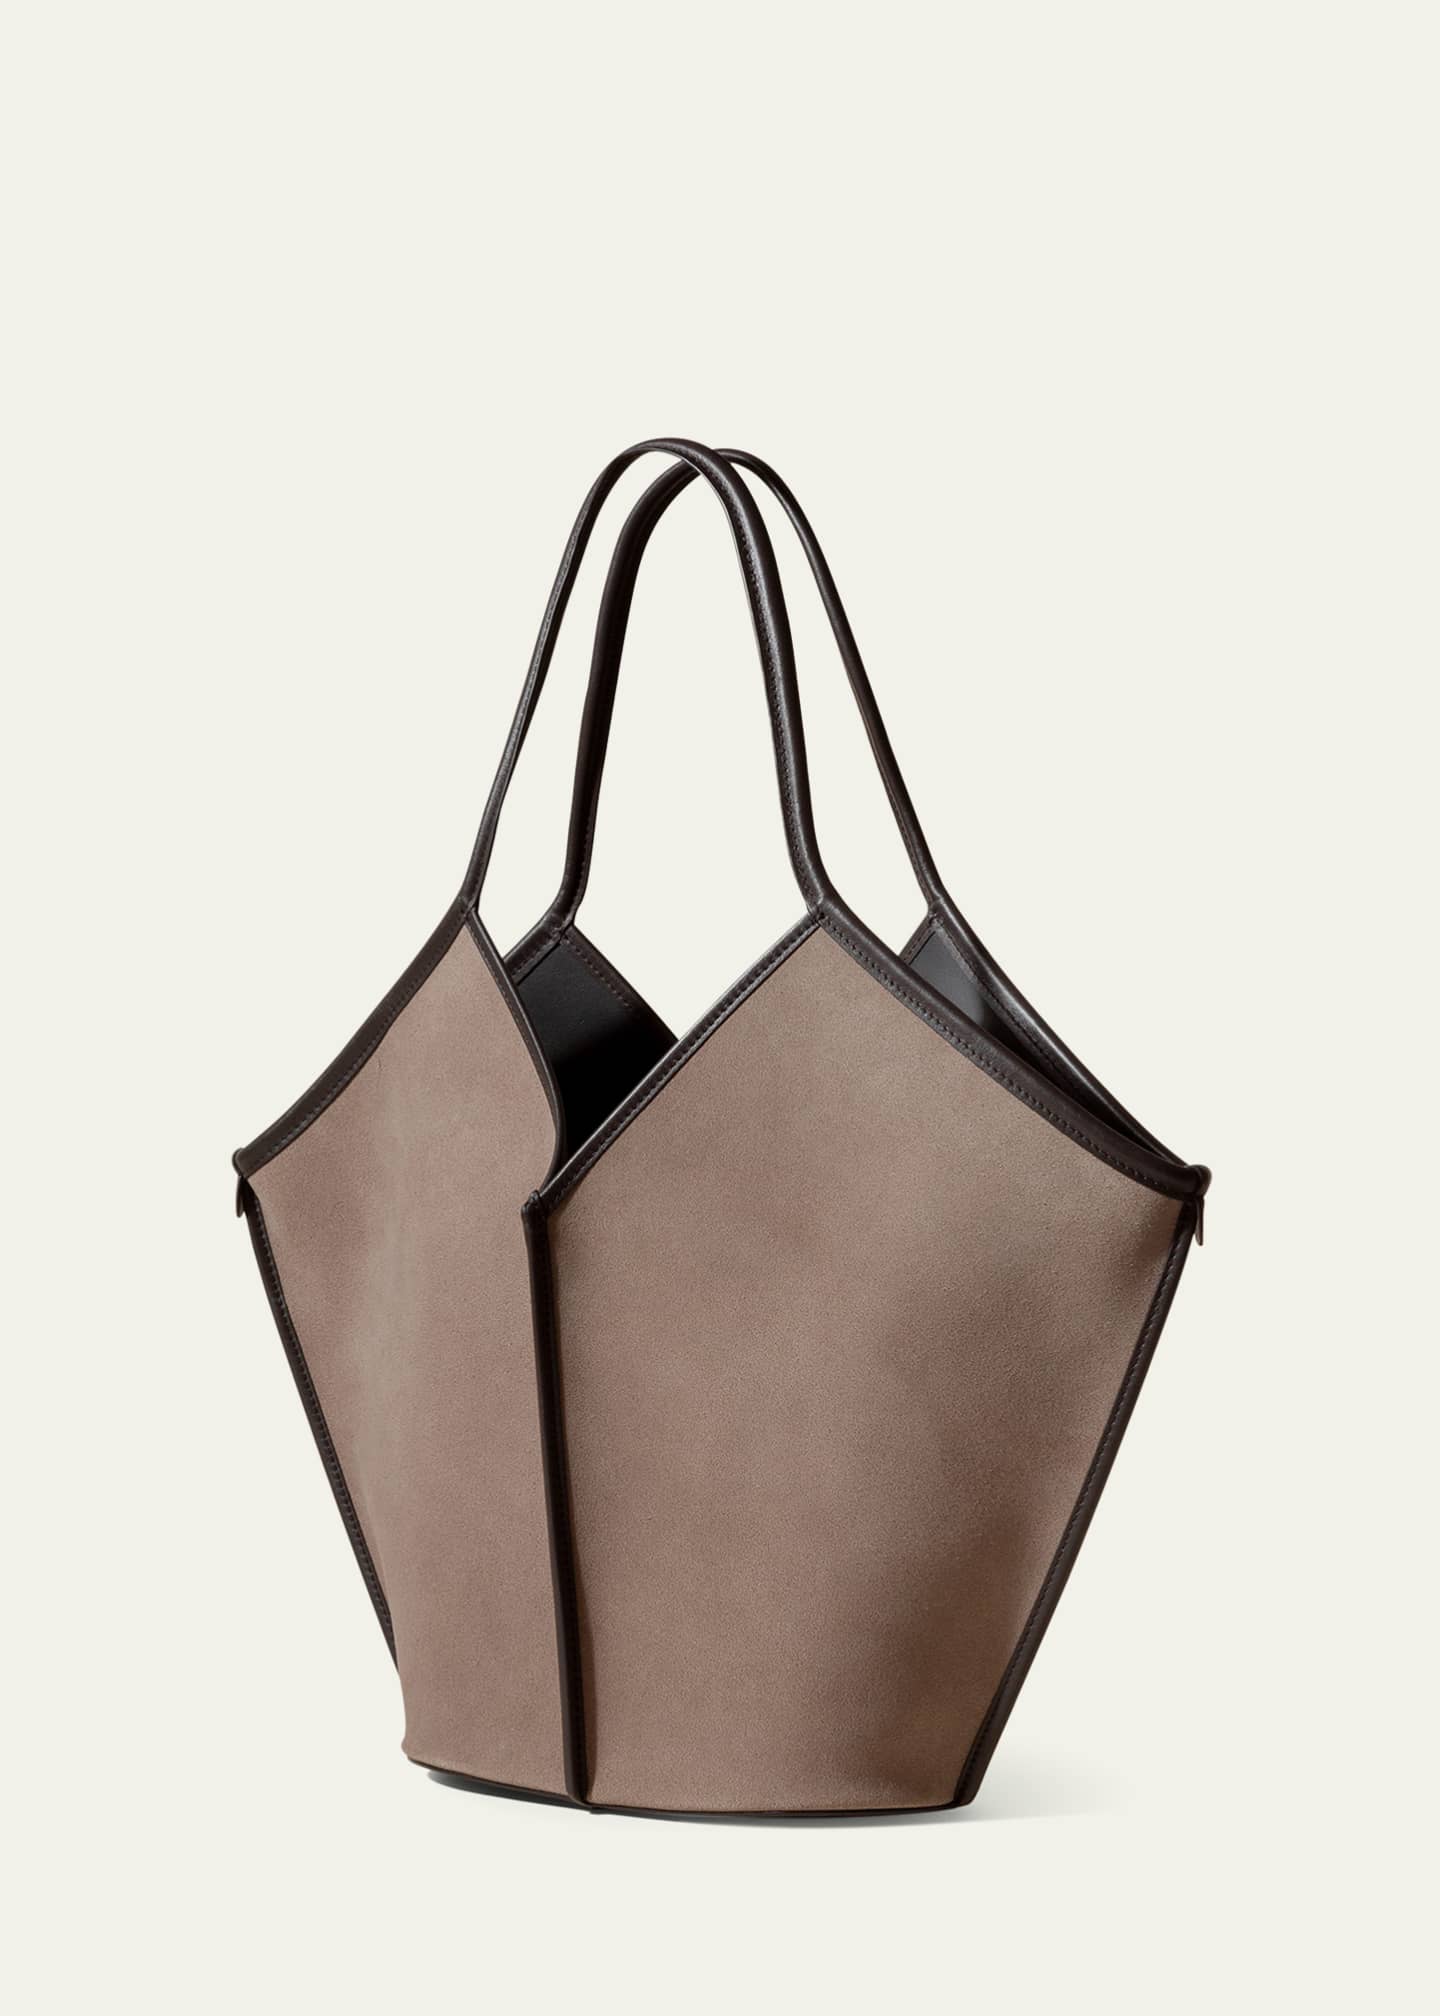 HEREU Calella Distressed Leather Tote Bag - Bergdorf Goodman